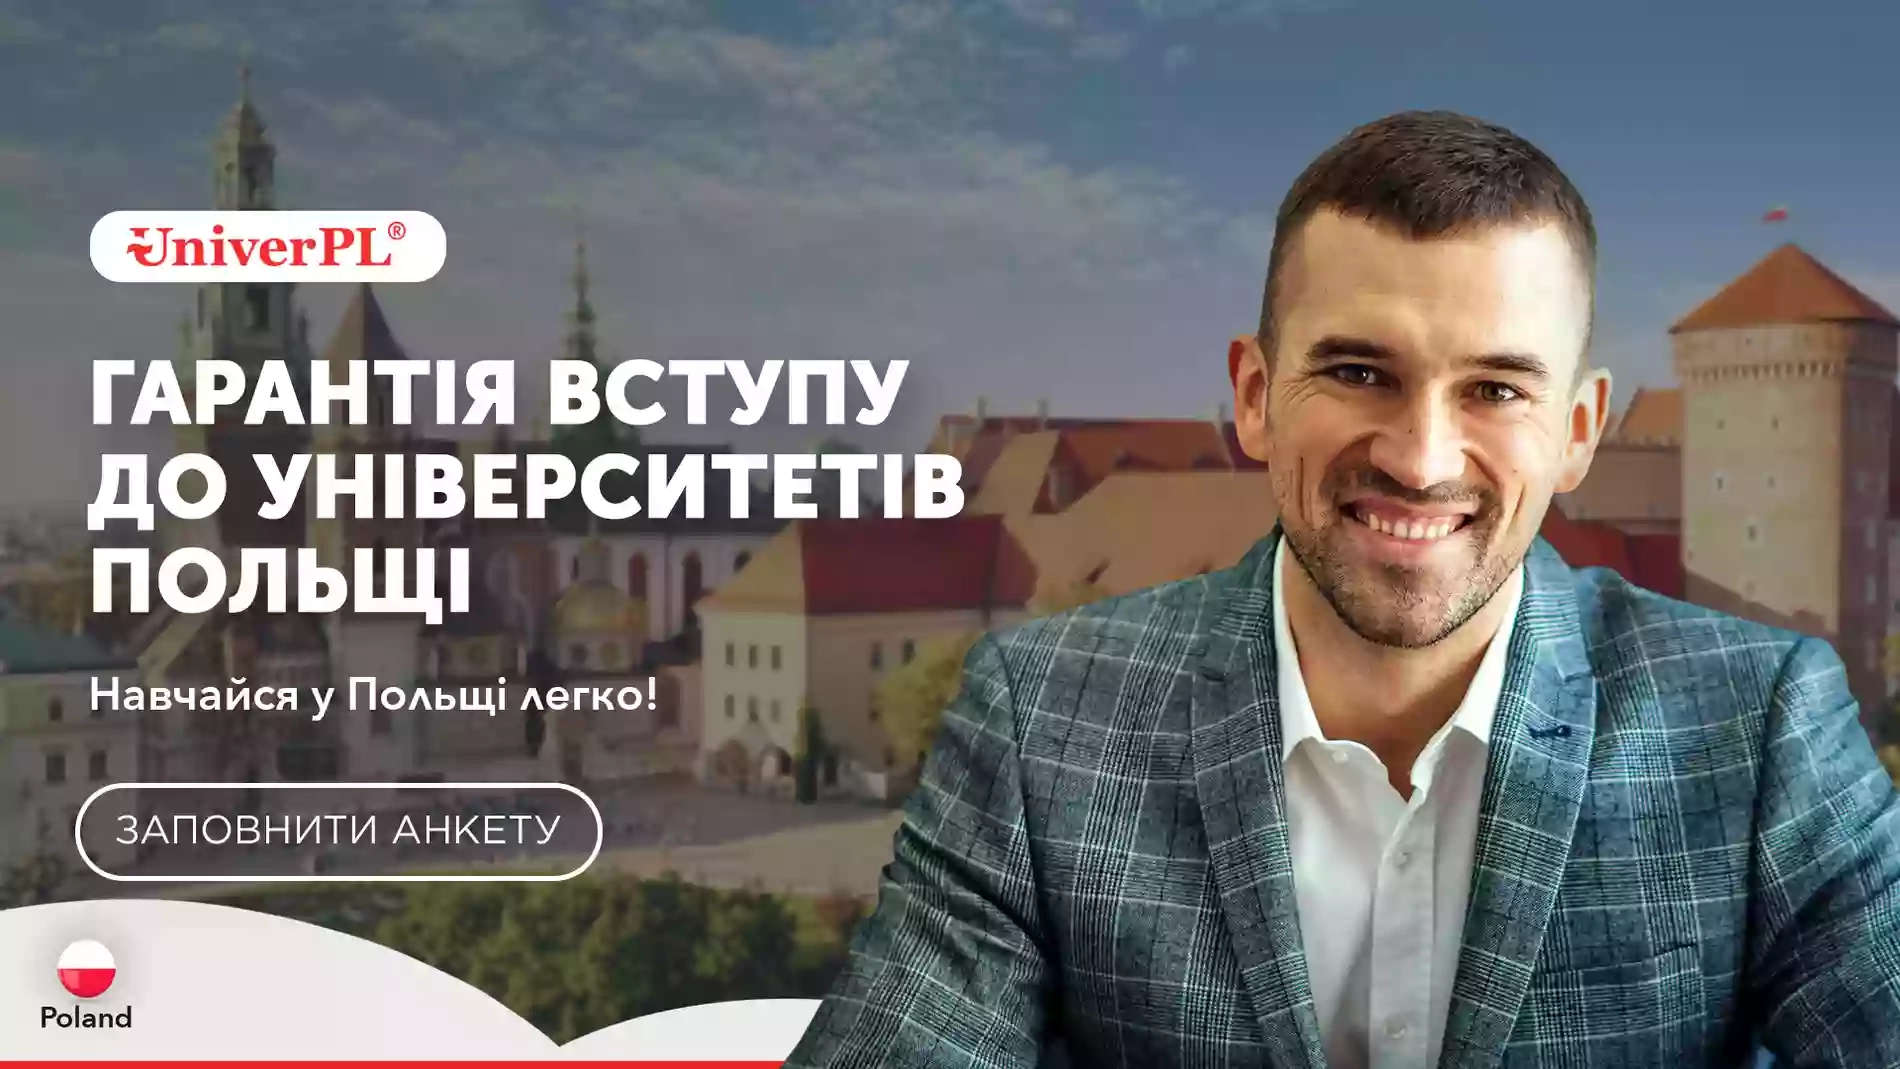 UniverPL | Освіта в Польщі